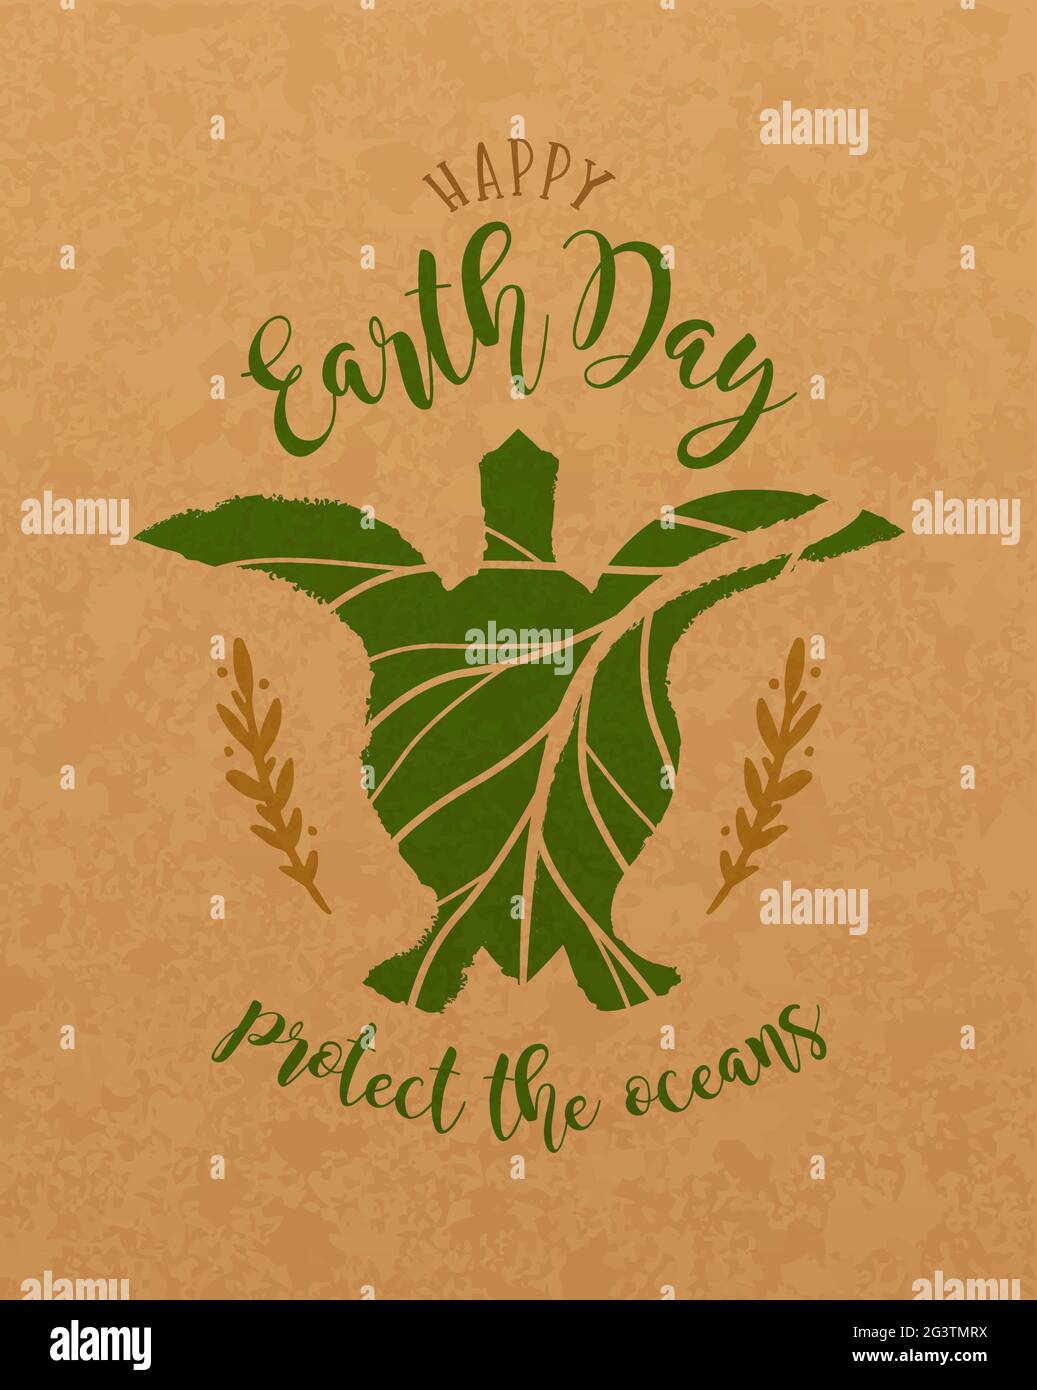 Happy Earth Day Grußkarte Illustration für feiertagsveranstaltung am 22. april. Grüne Meeresschildkröte aus handgezeichneter Blattform auf recyceltem Papier Hintergrund. Sa Stock Vektor